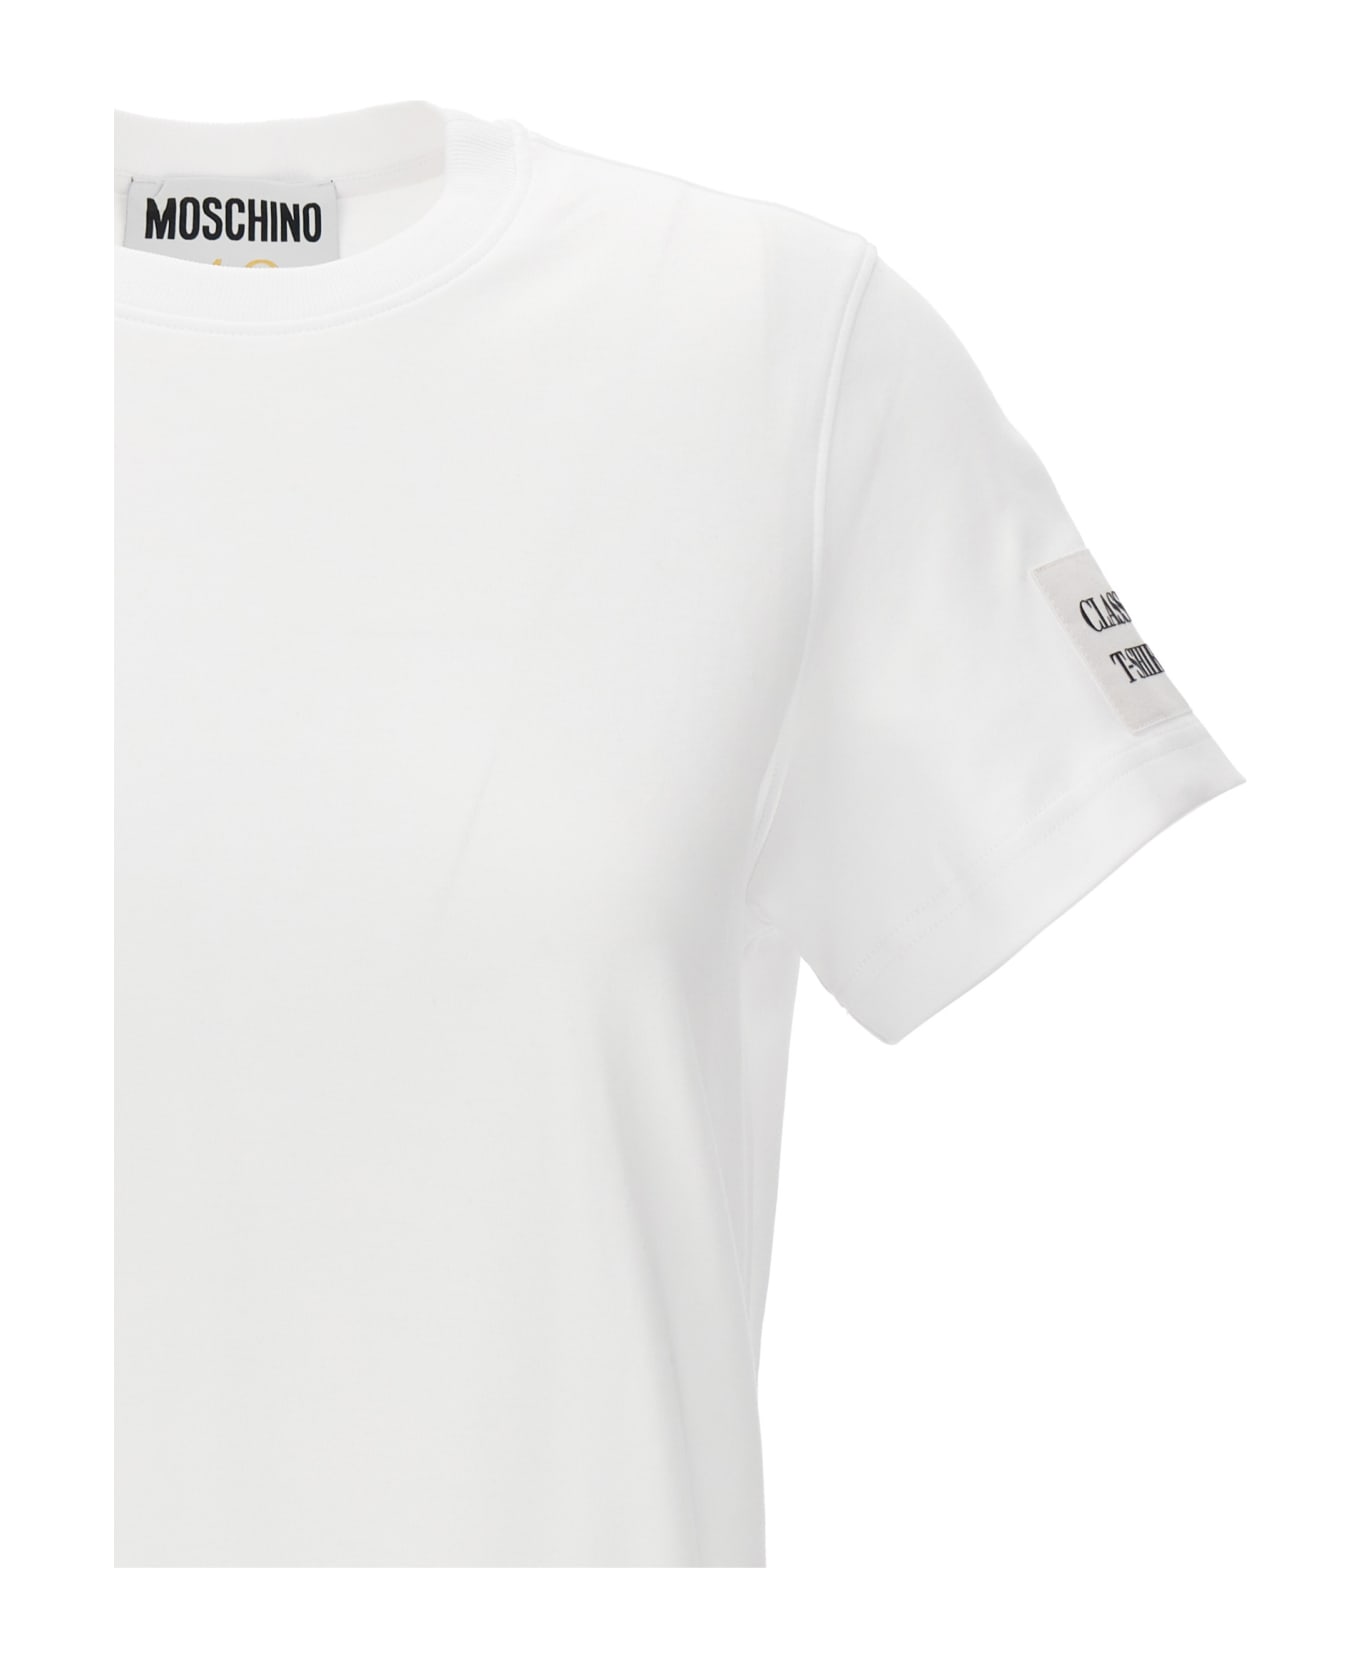 Moschino 'basic' T-shirt - White